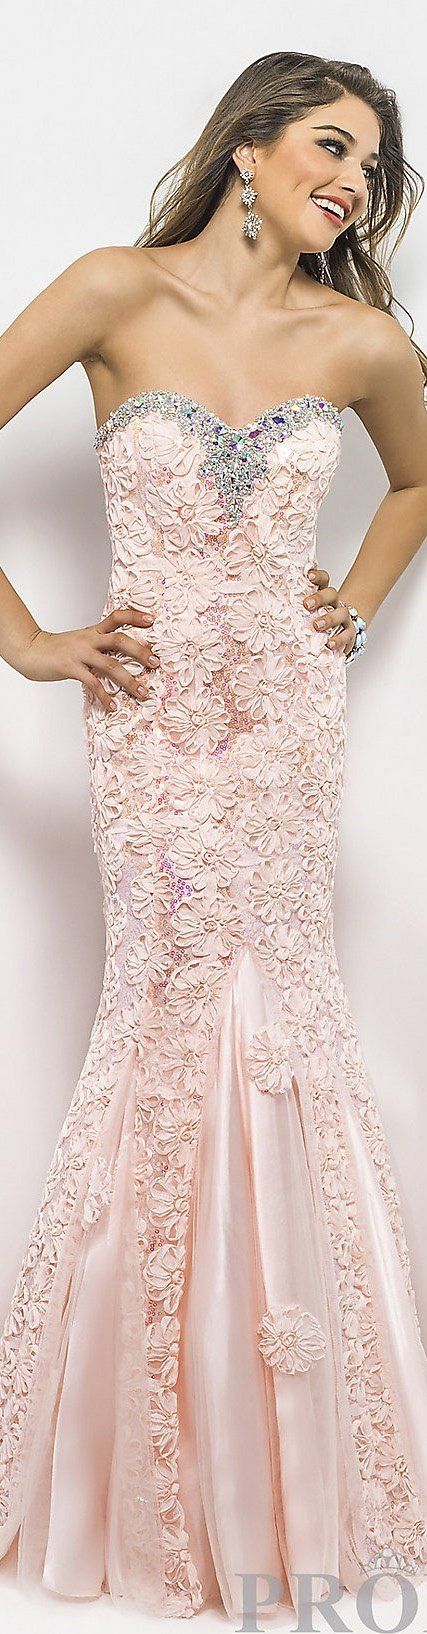 I wish I had a reason to wear this dress! Glitter prom dress